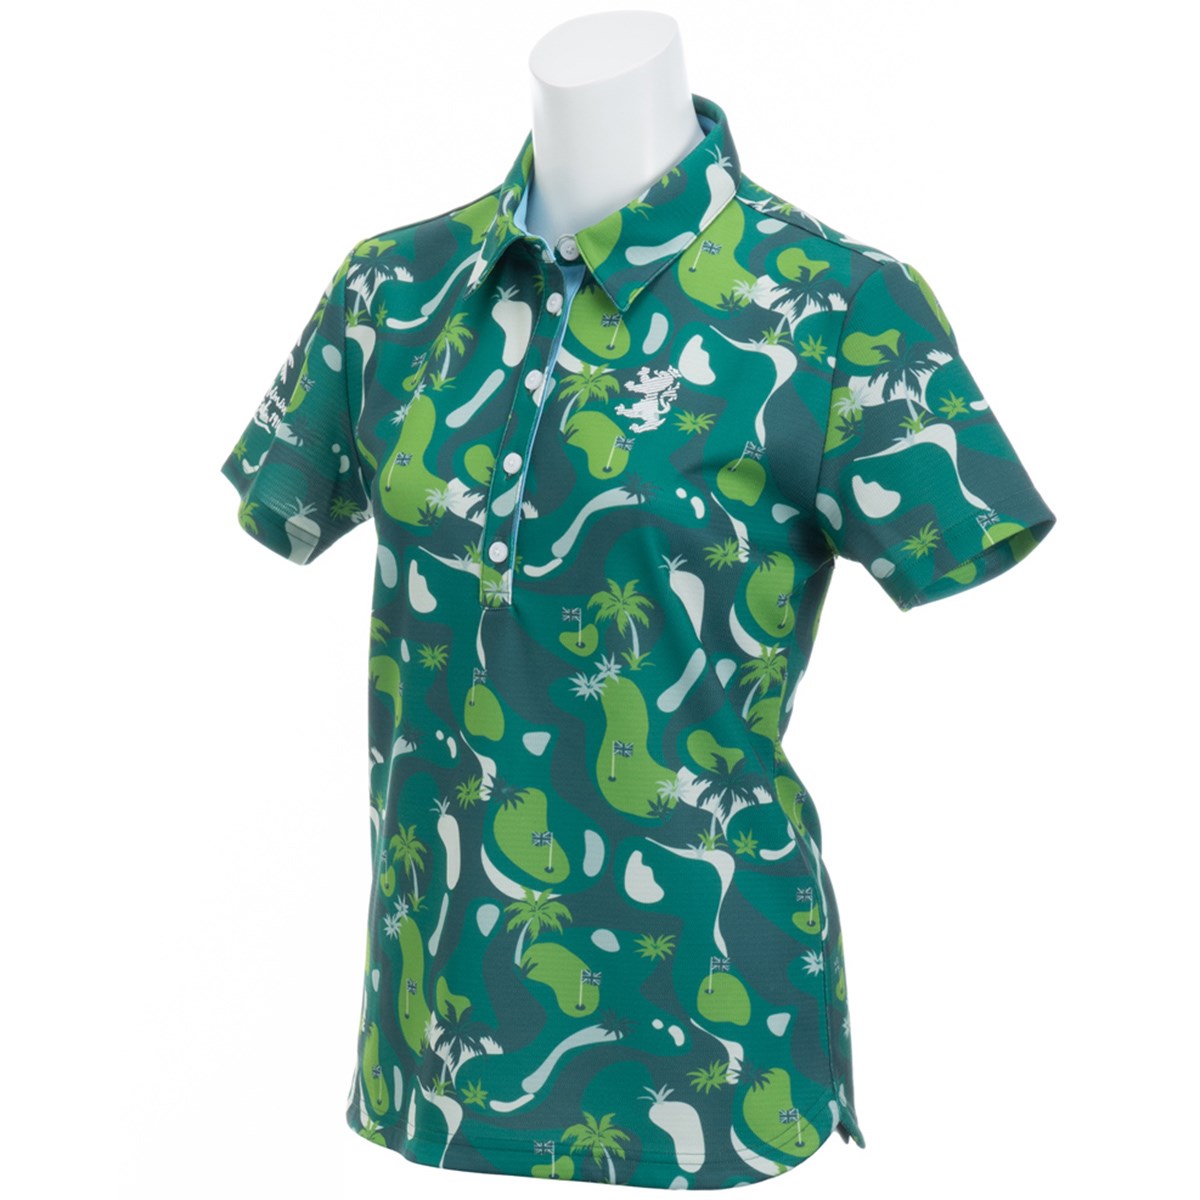  [アウトレット] [在庫限りのお買い得商品] アドミラル ゴルフコース柄 半袖ポロシャツ ゴルフウェア